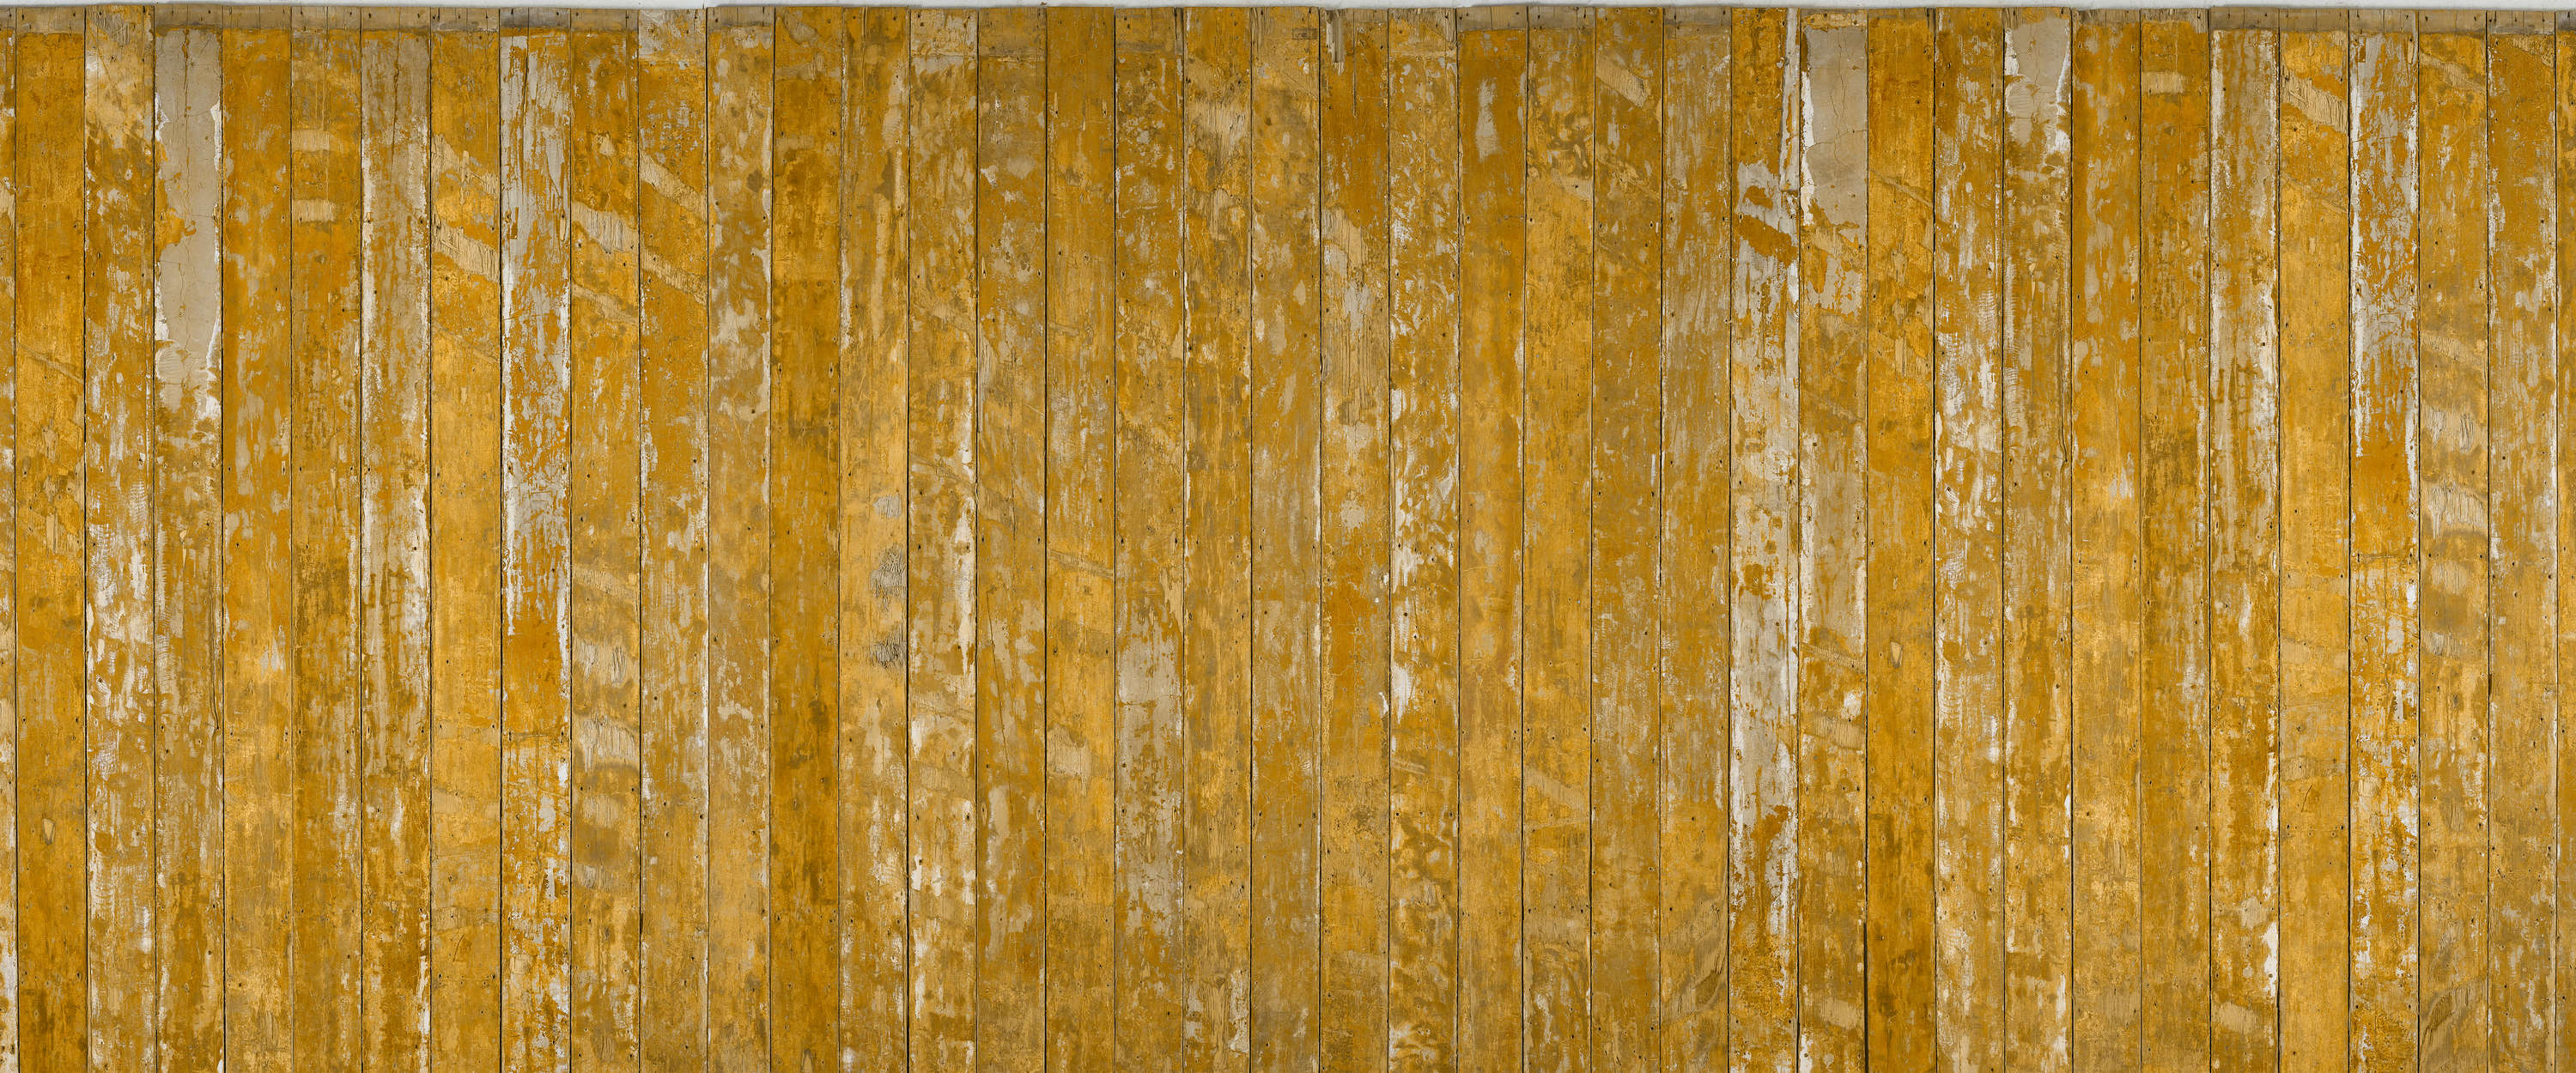             Houten planken geel houtlook behang in used look
        